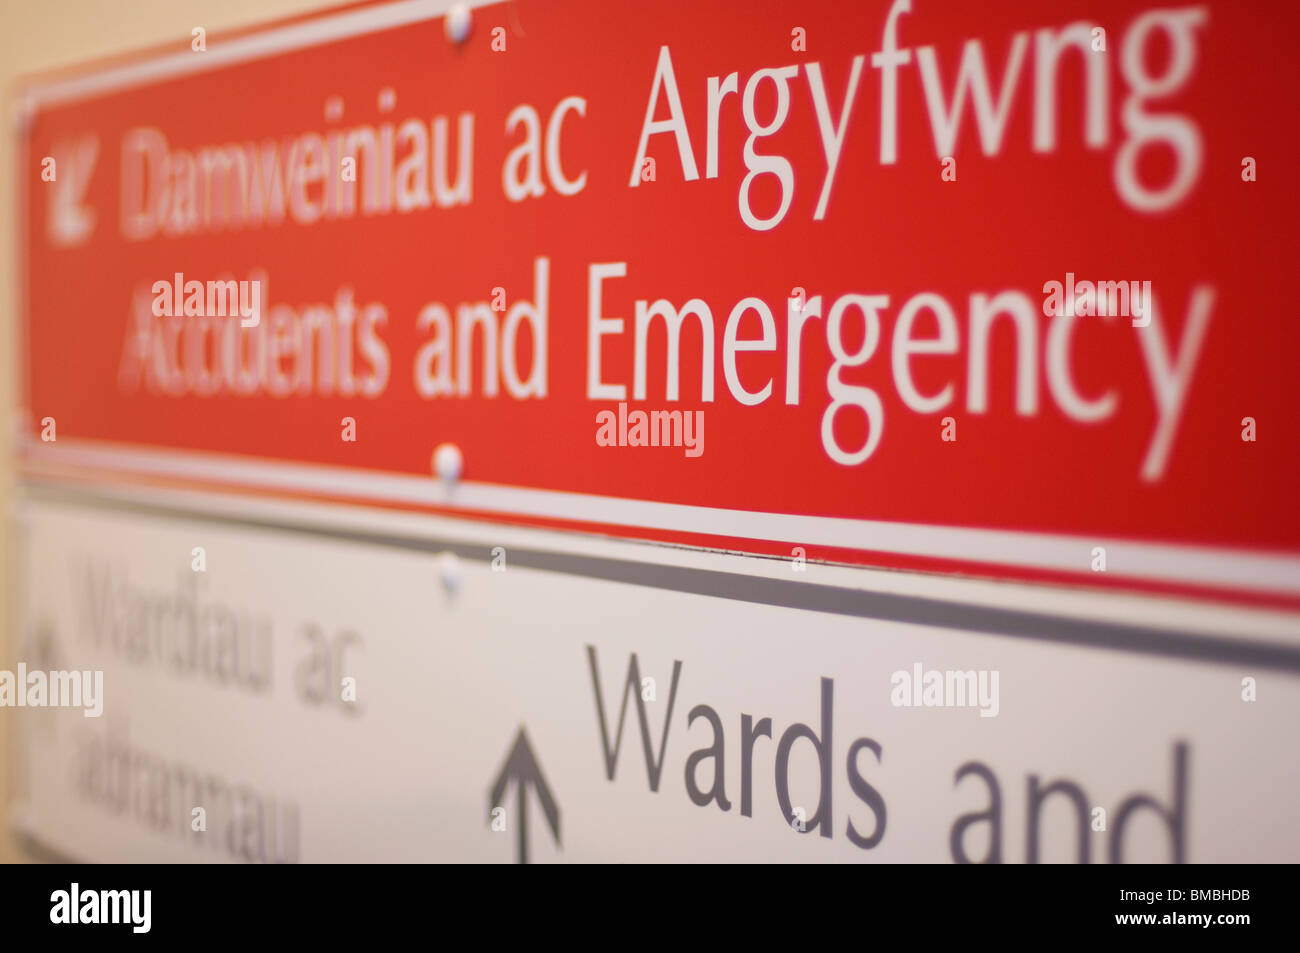 Un signe pour les accidents et d'urgence de l'hôpital Bronglais à Aberystwyth, tourné avec une faible profondeur de champ. Banque D'Images